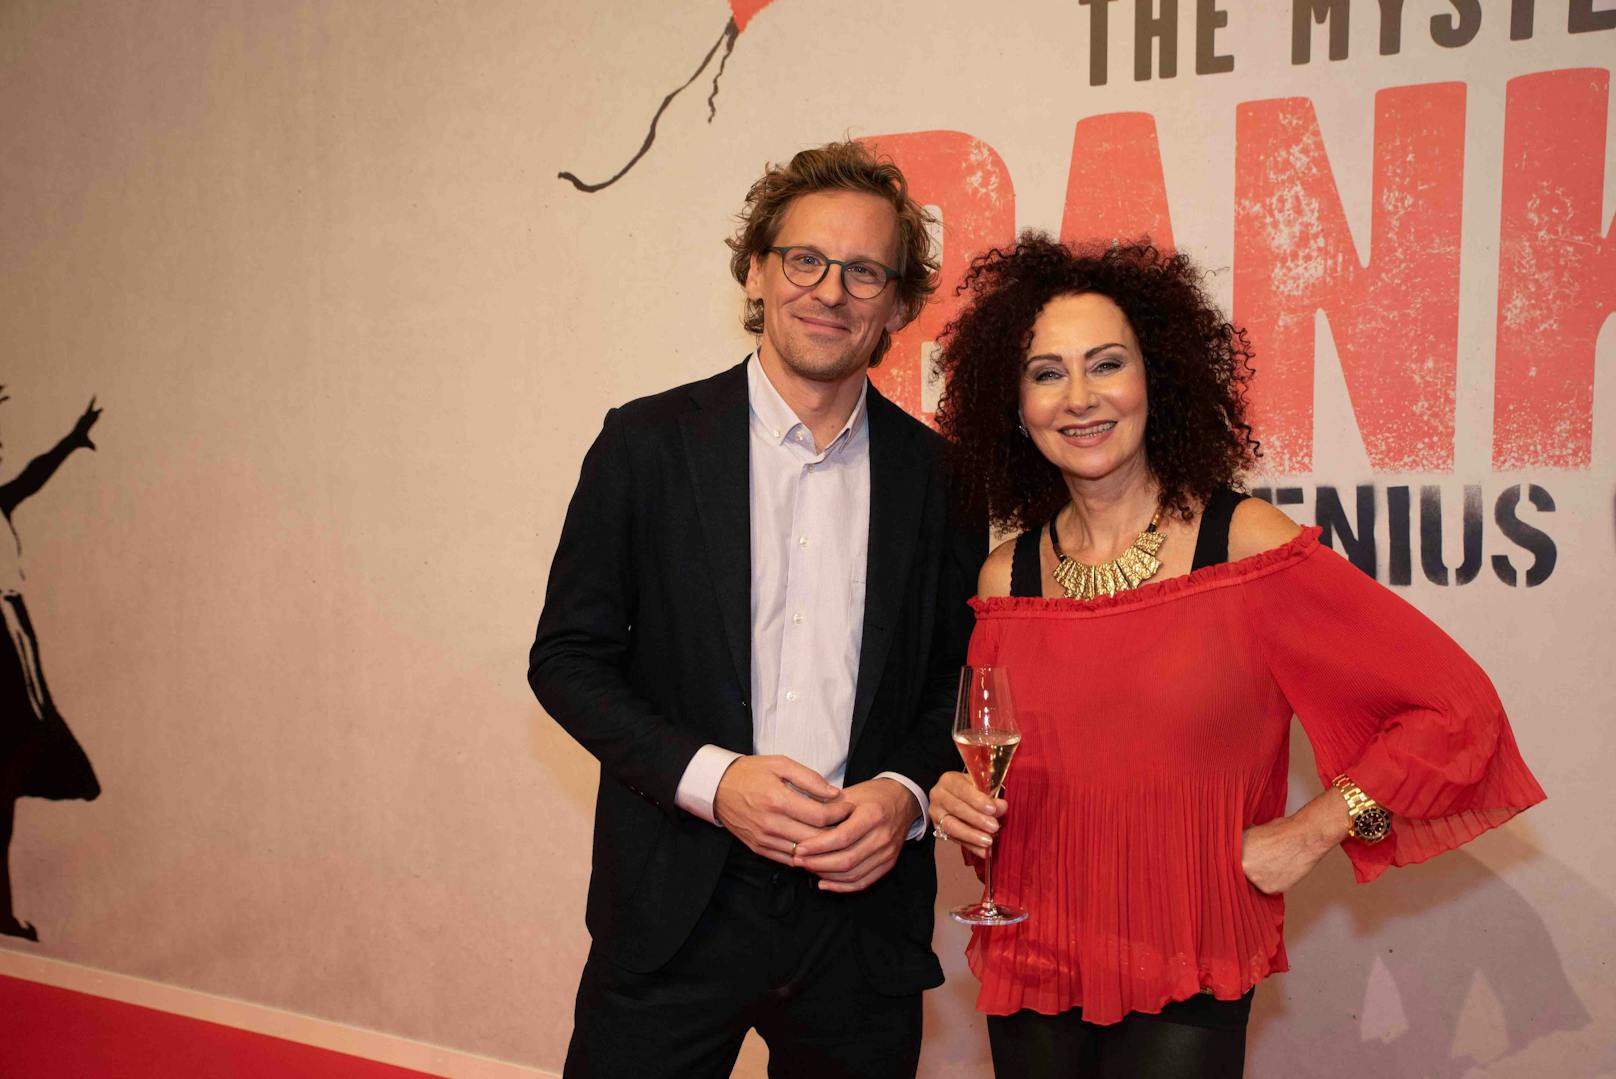 Christina Lugner mit Stadthallen-Geschäftsführer Matthäus Zelenka bei der Eröffnung der Banksy-Ausstellung&nbsp;